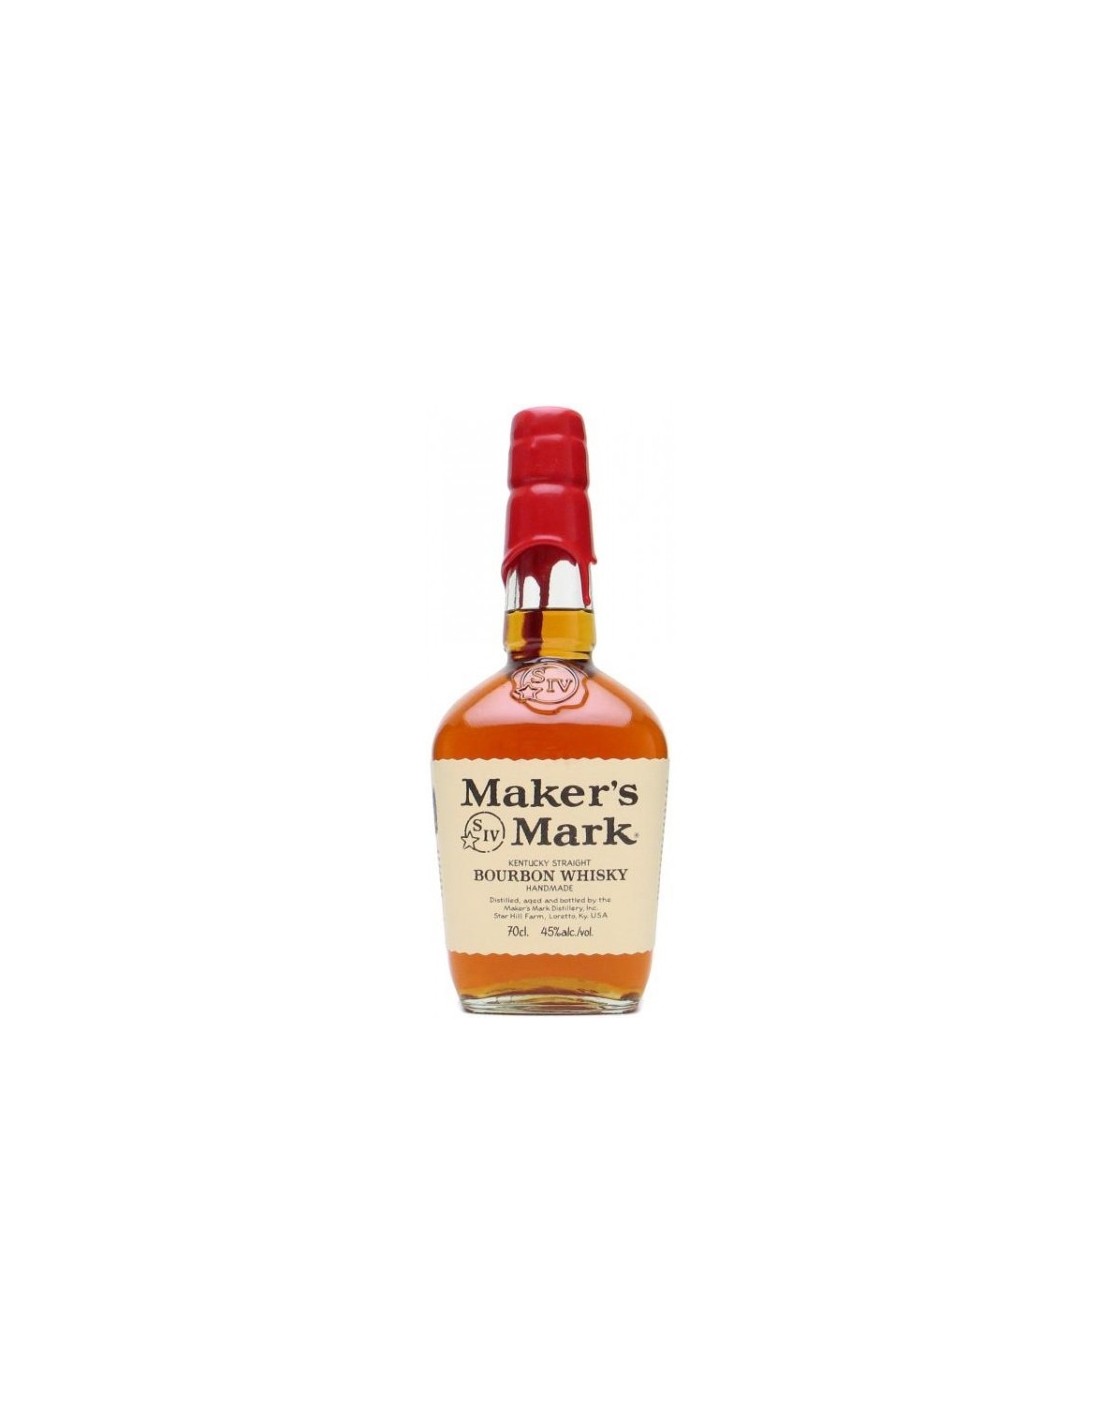 Whisky Bourbon Maker's Mark, 45% alc., 0.7L, America